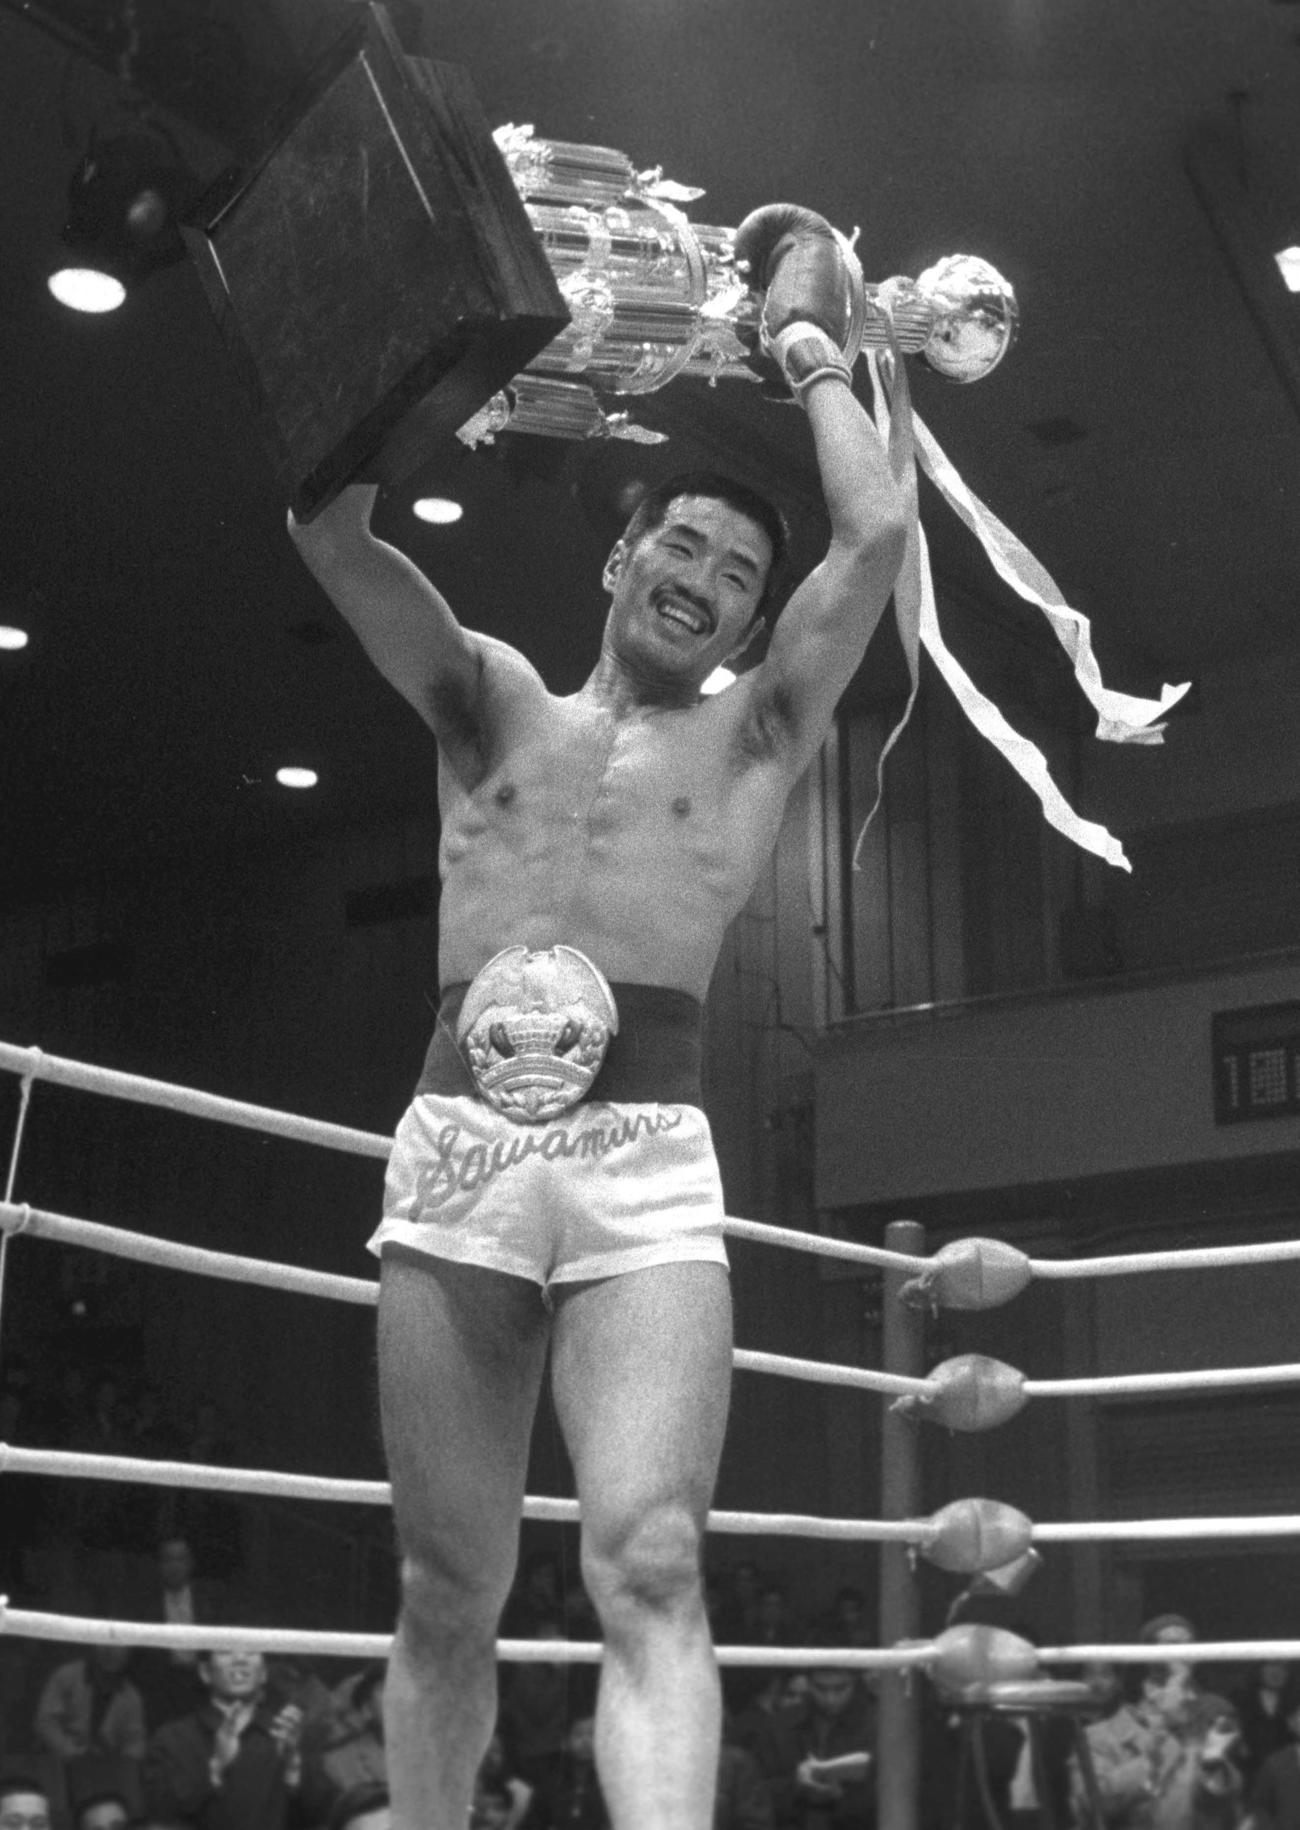 沢村忠氏は「キックの鬼」と呼ばれ国内では連戦連勝、キックボクシングが大ブームになった（1969年1月4日撮影）